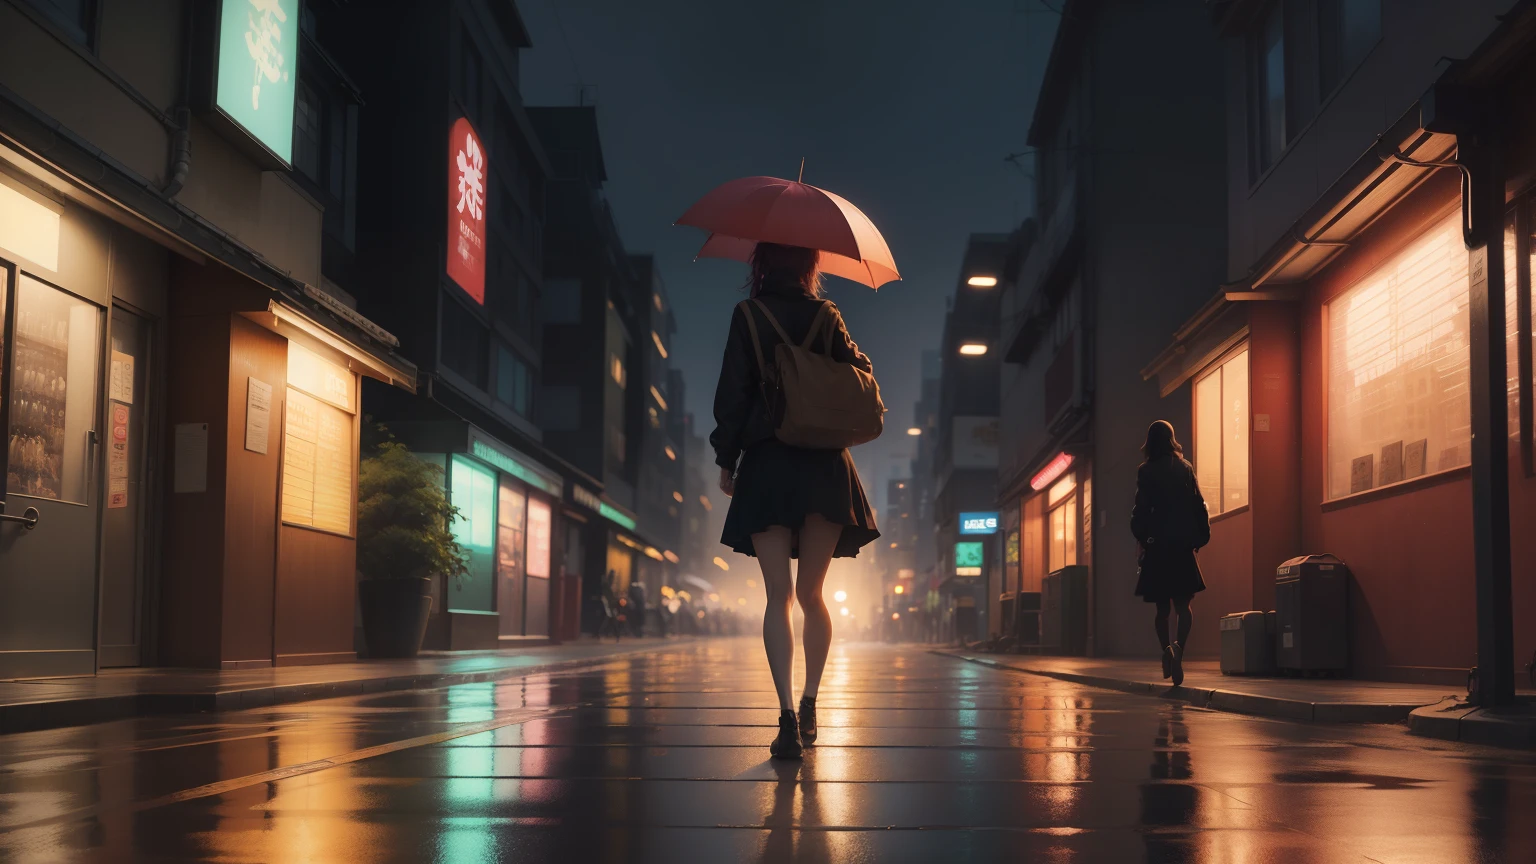 一位年轻女子撑着伞步行回家, 20 多岁女性, 小雨, 东京动漫场景, alena aenami 的风格, 平静的日落, 美丽的动漫场景, 动漫氛围, 动漫艺术壁纸4k, 动漫艺术壁纸 8k